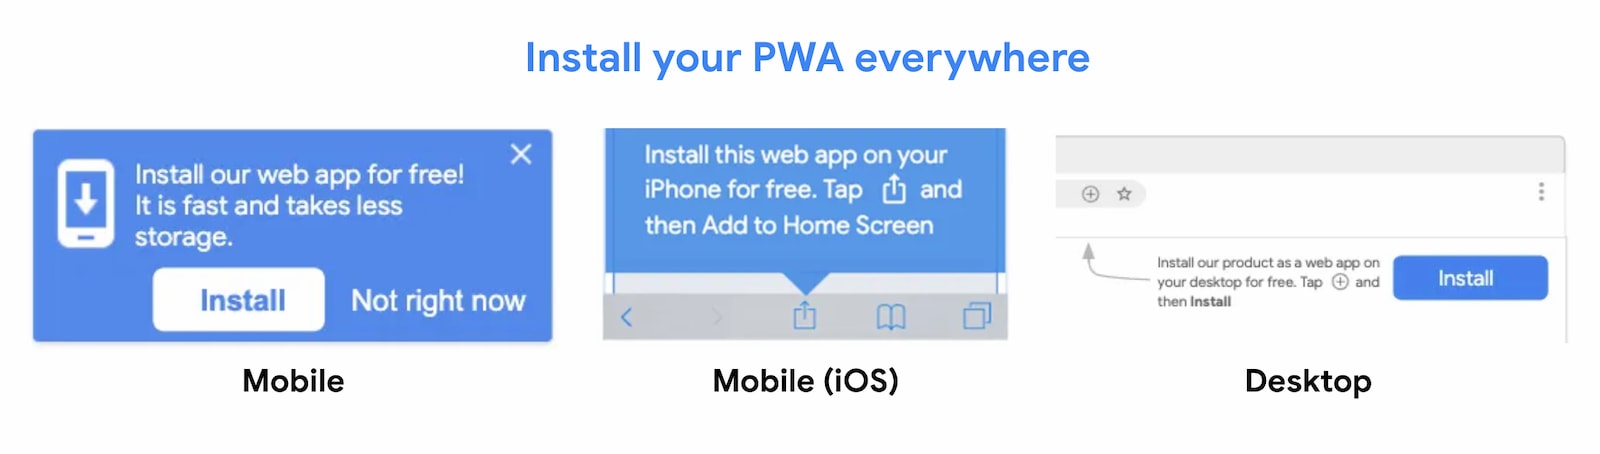 PWA ها در همه جا قابل نصب هستند.